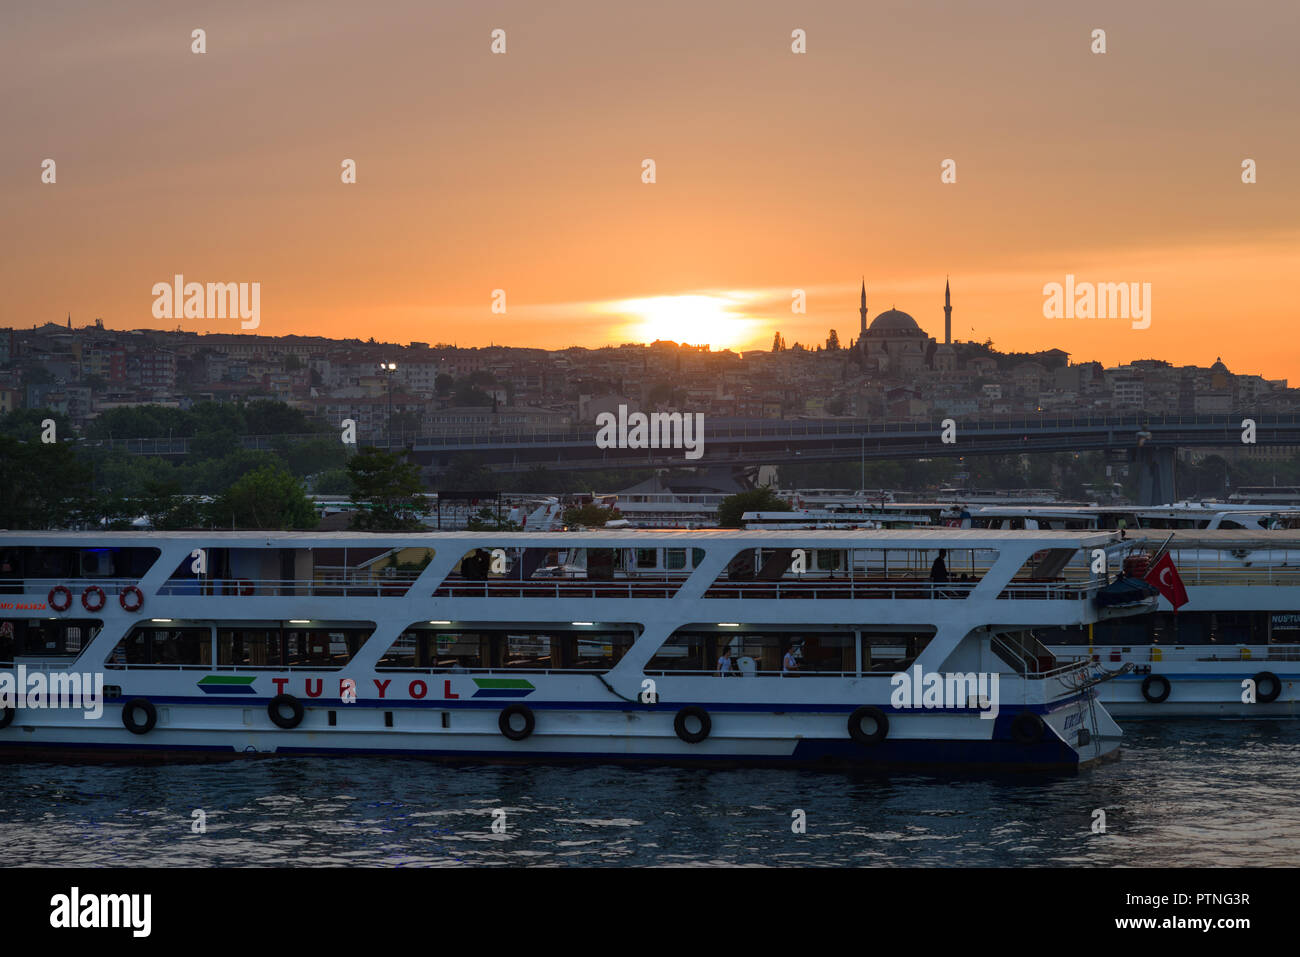 Turyol traghetti passeggeri a Golden Horn edifici e moschea di sfondo al tramonto, istanbul, Turchia Foto Stock